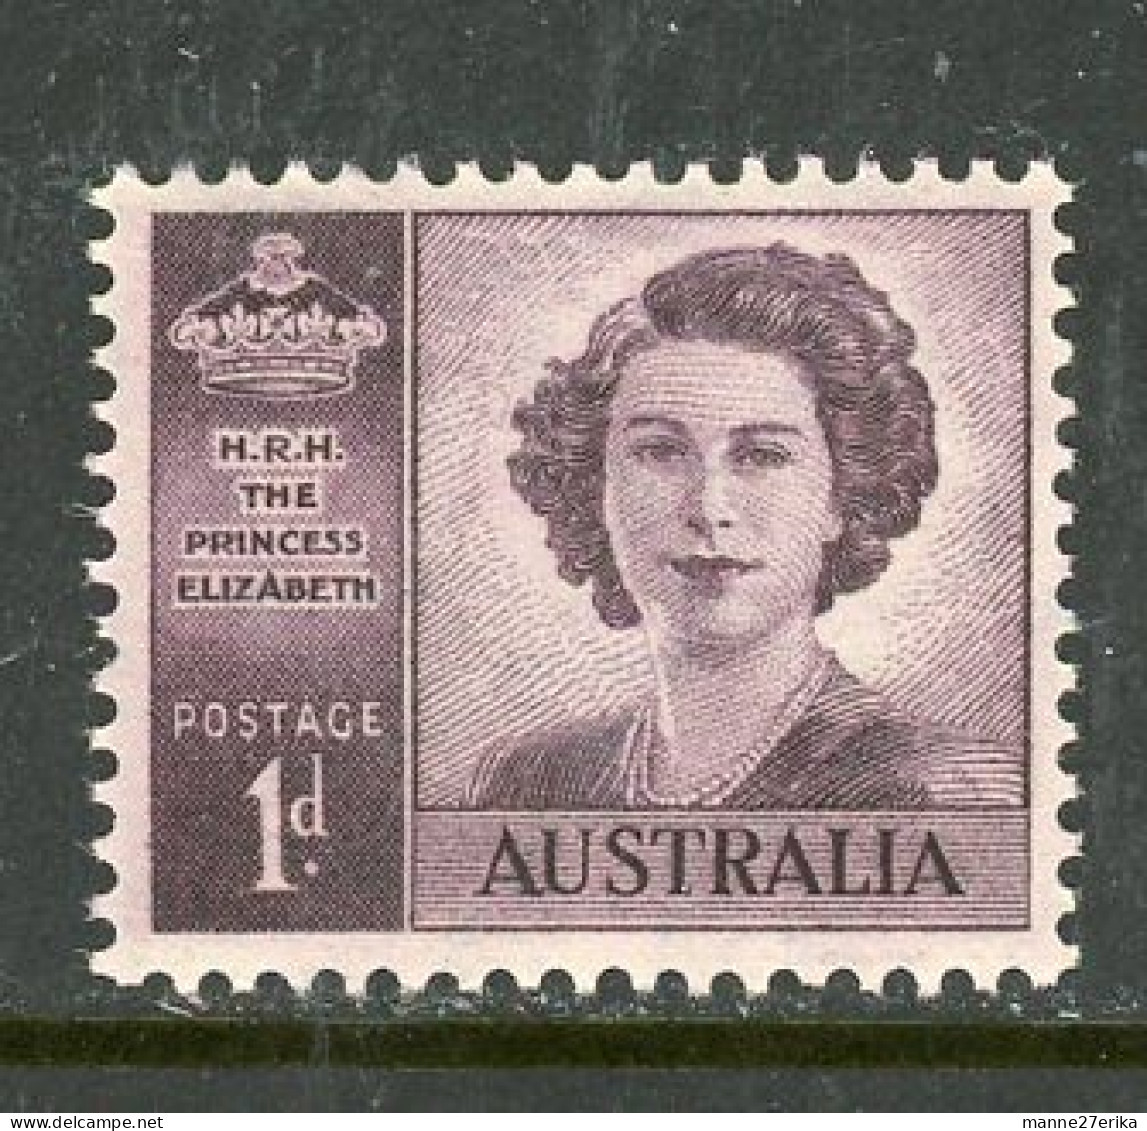 Australia MNH 1947 - Nuovi